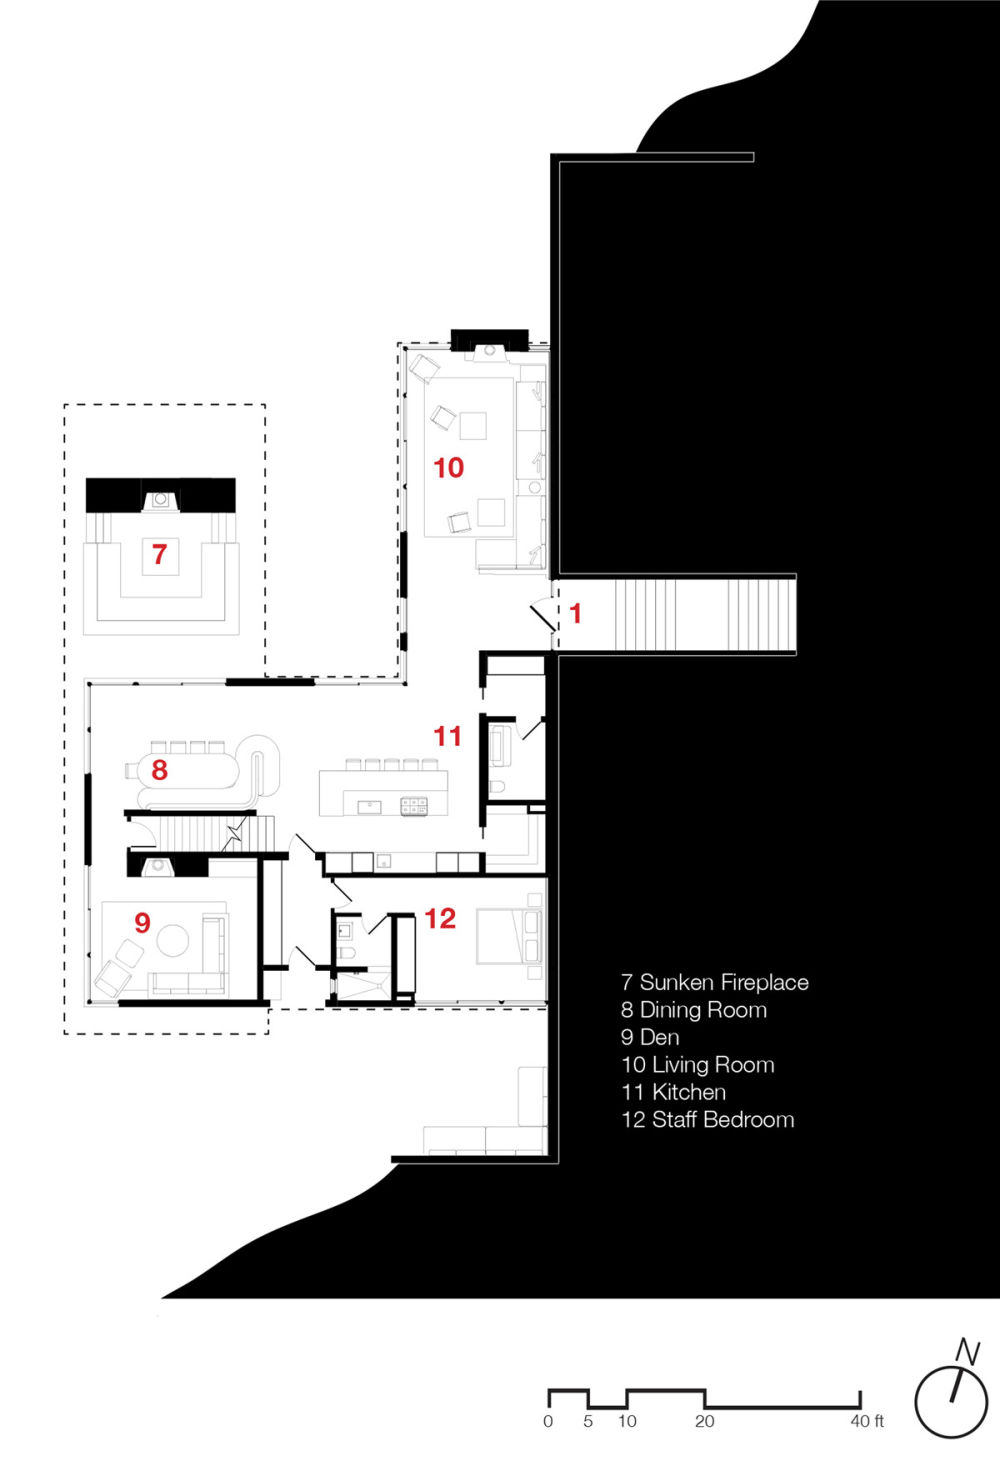 shore-house-leeroy-street-studio-north-haven-new-york-scott-frances_dezeen_ground-floor-plan.jpg